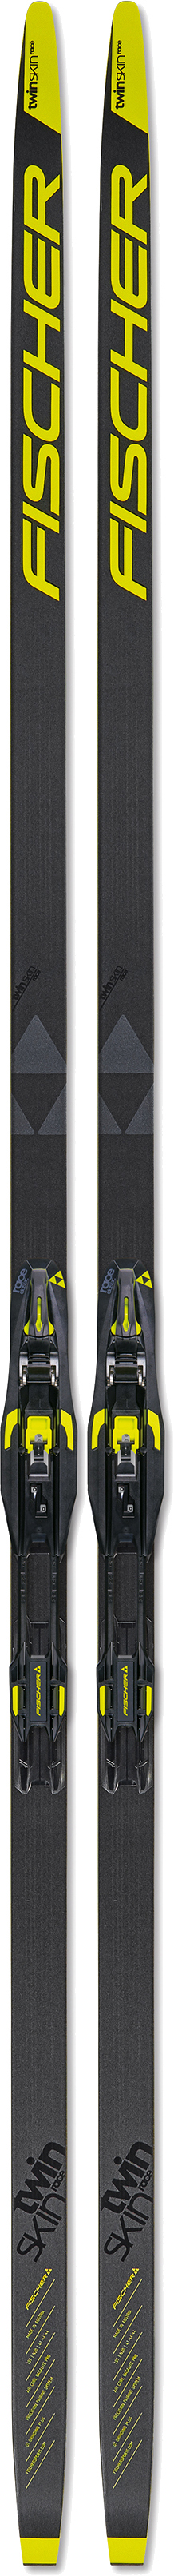 Купить беговые лыжи Fischer Twin Skin Race Medium IFP 187 см в Киеве